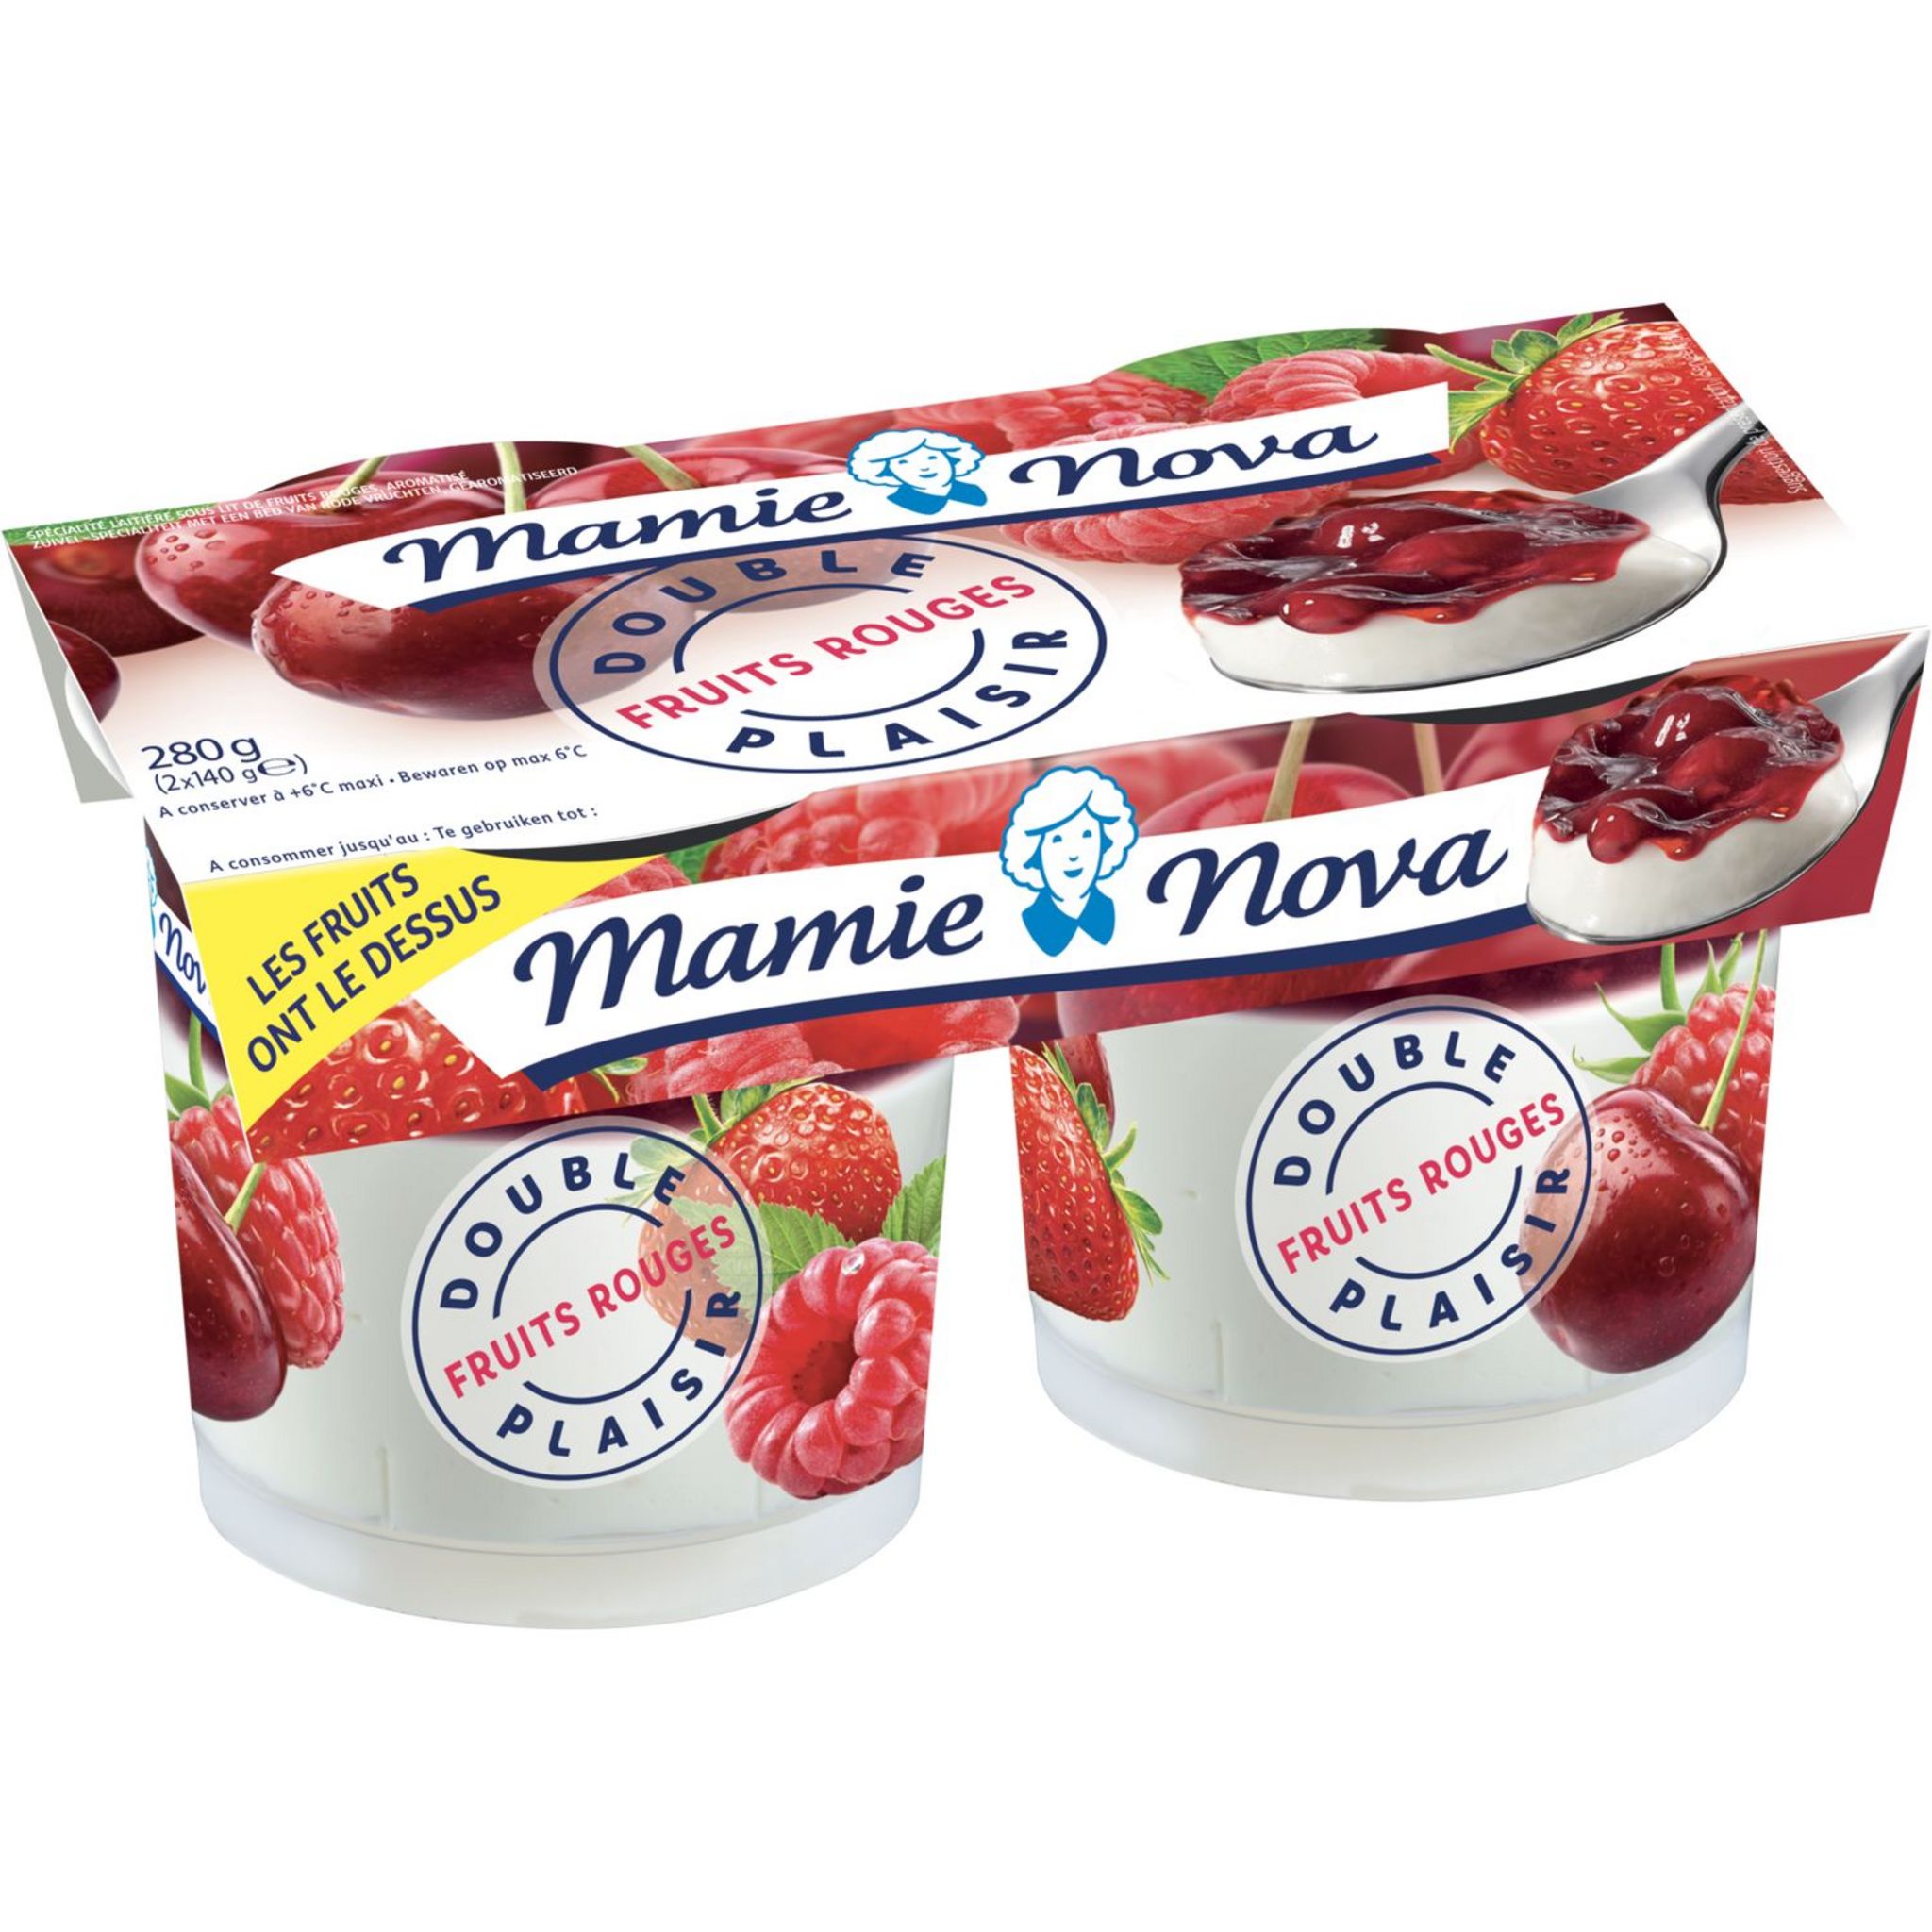 Les yaourts Evasion de Mamie Nova